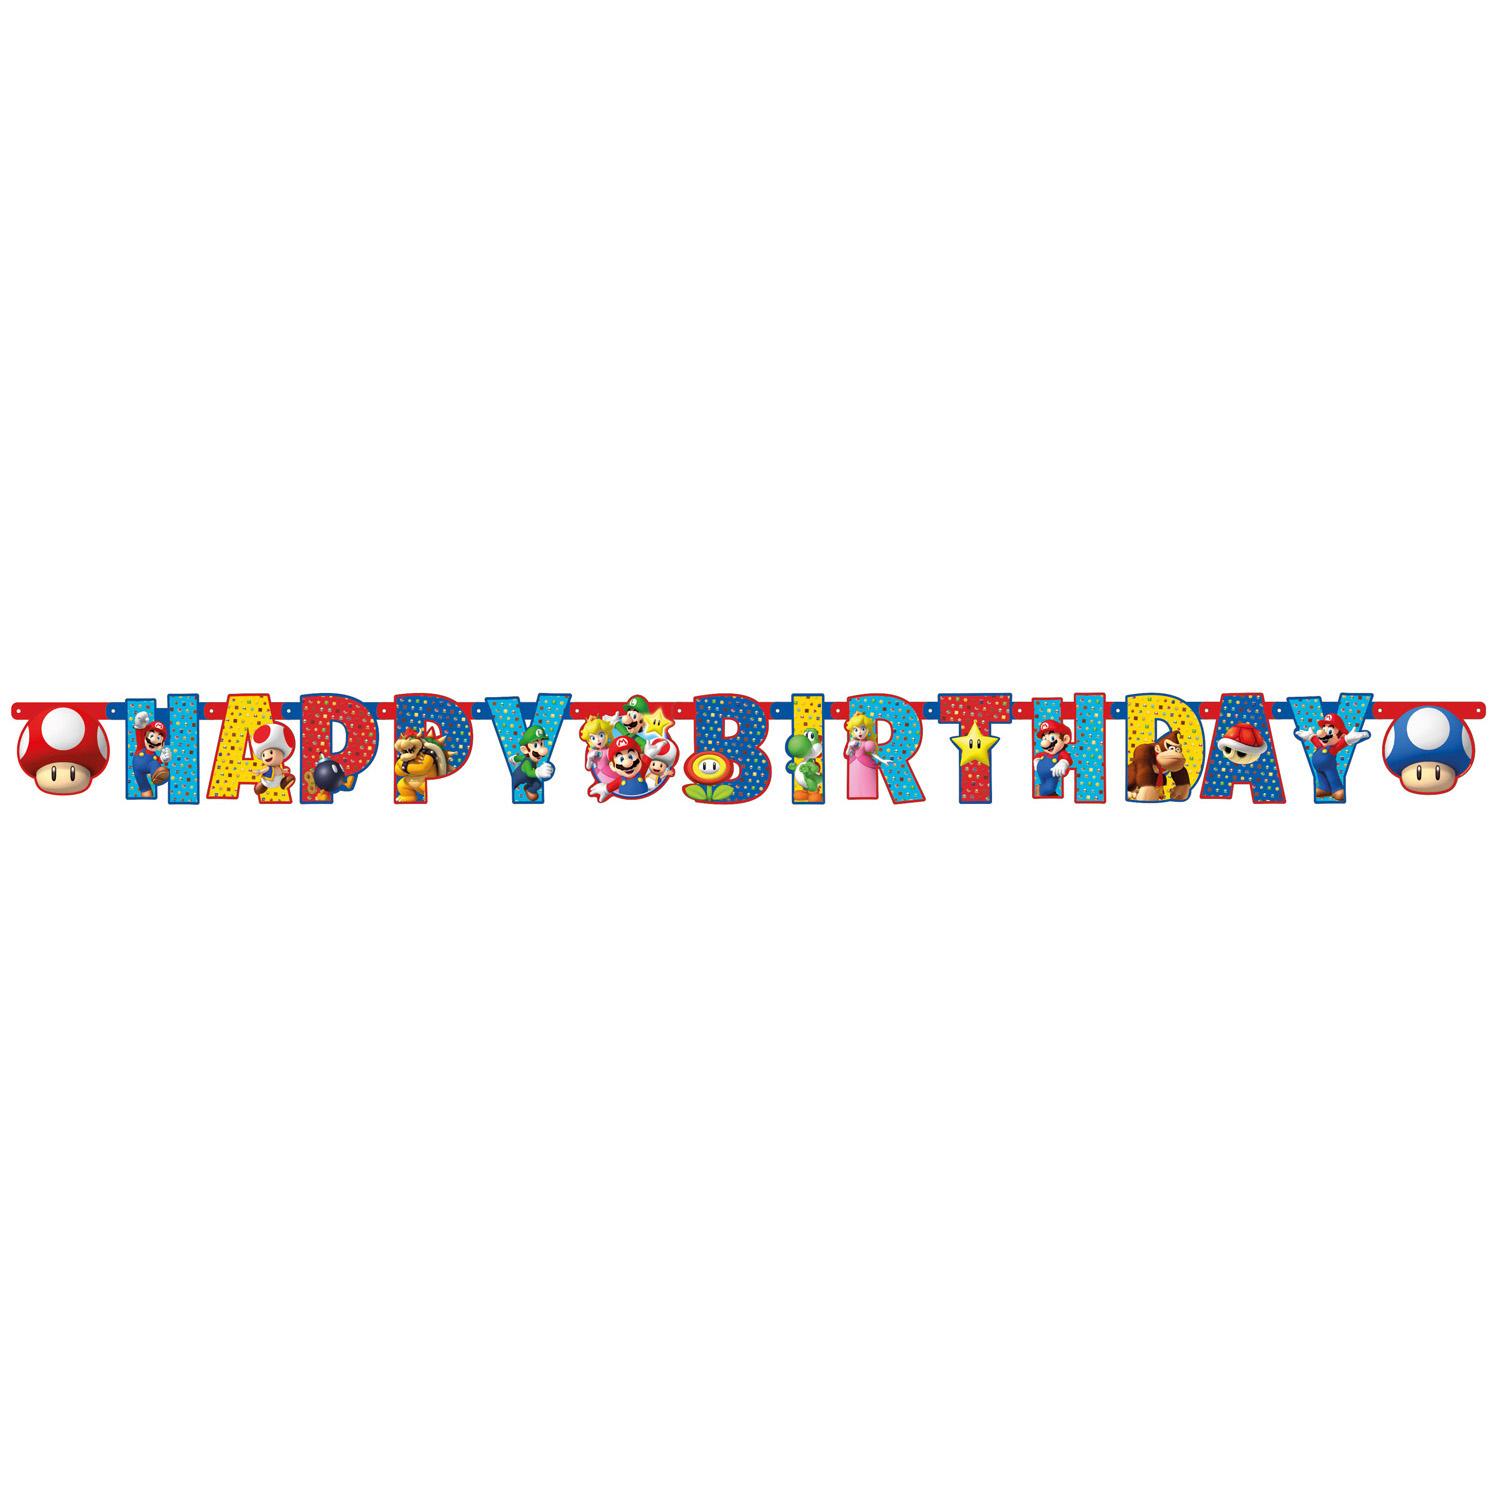 Super Mario Letter Banner 190 x 18cm Decorations - Party Centre - Party Centre